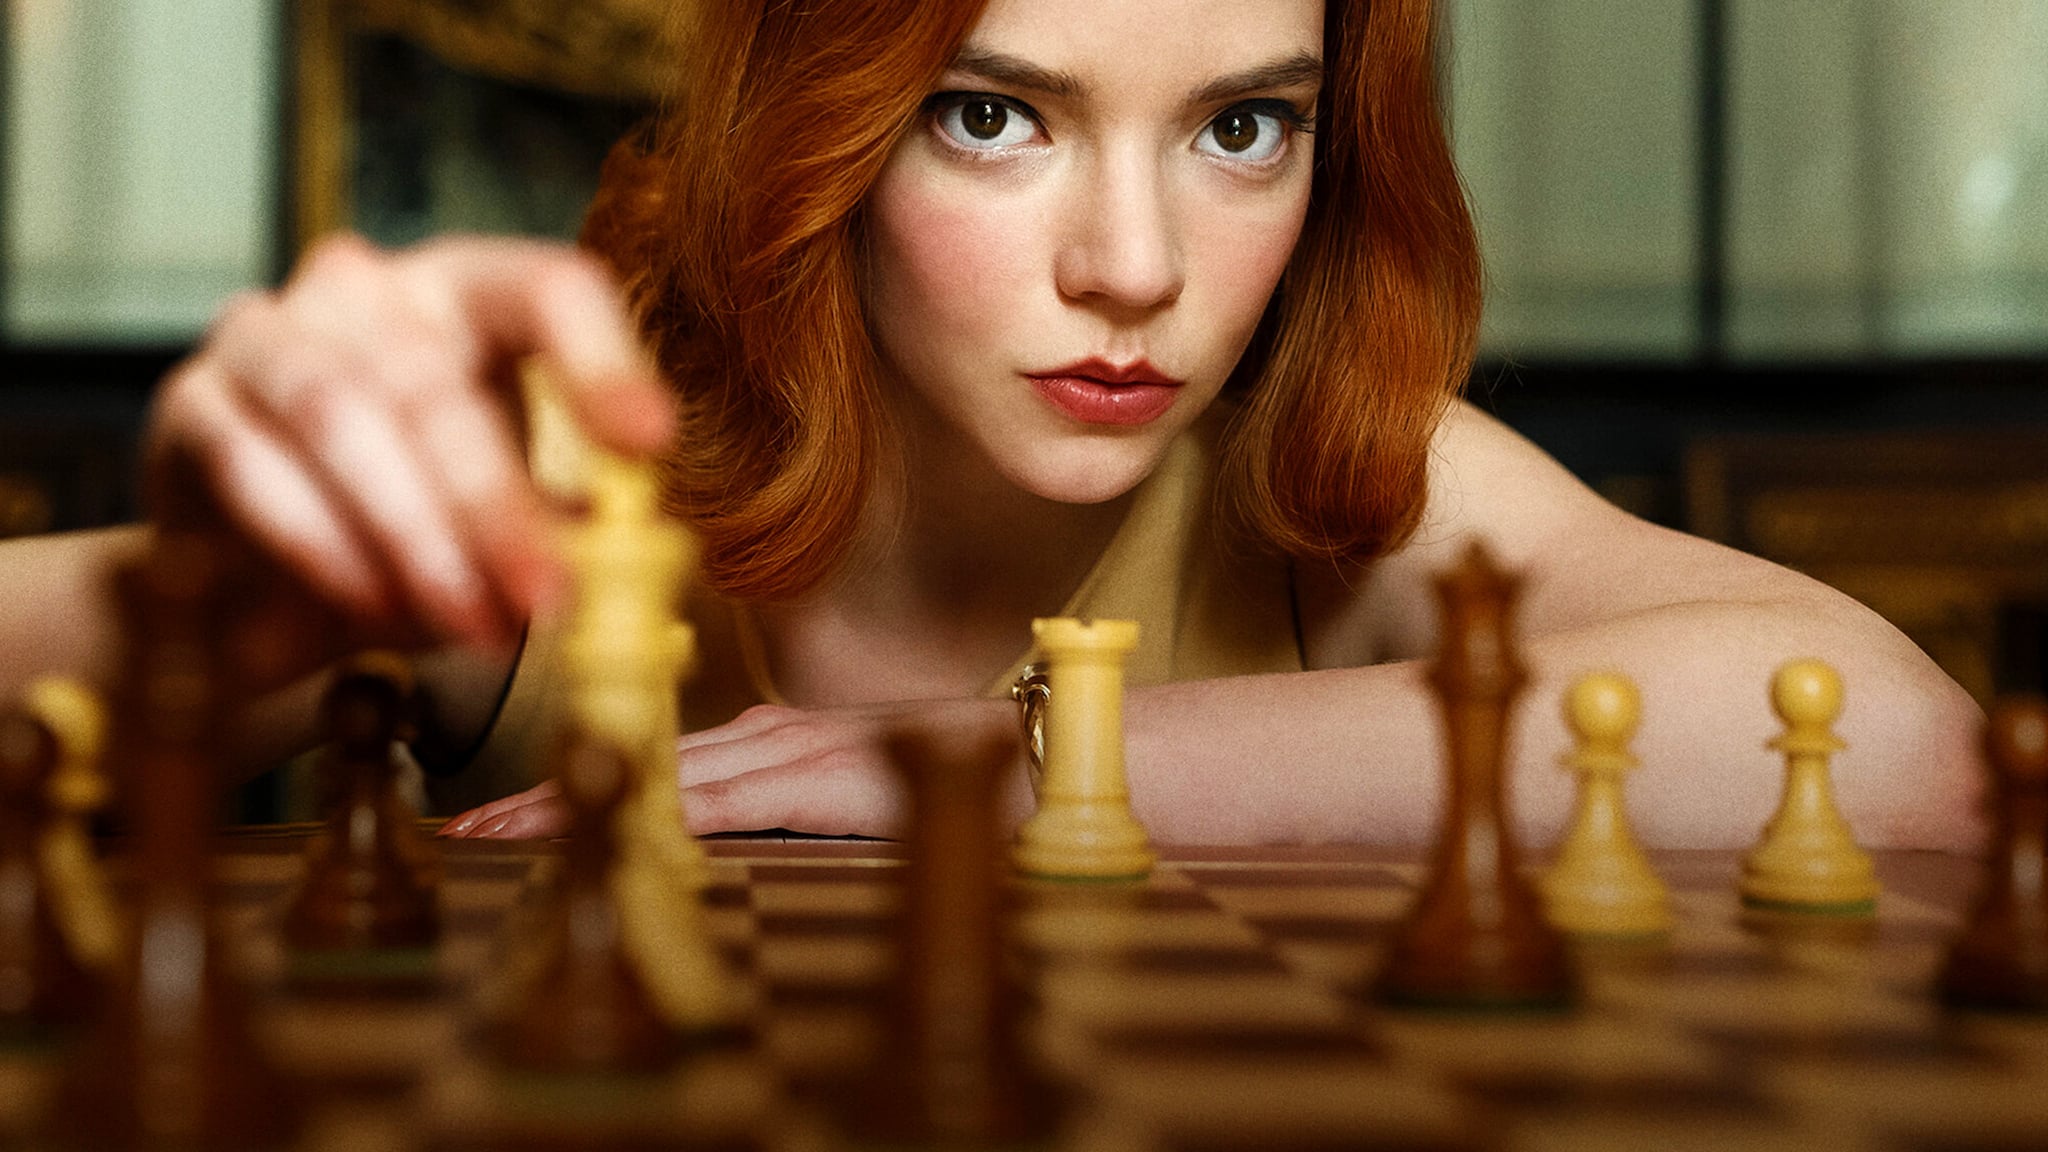 Le Jeu de la dame : une joueuse d'échecs fait un procès à la série Netflix